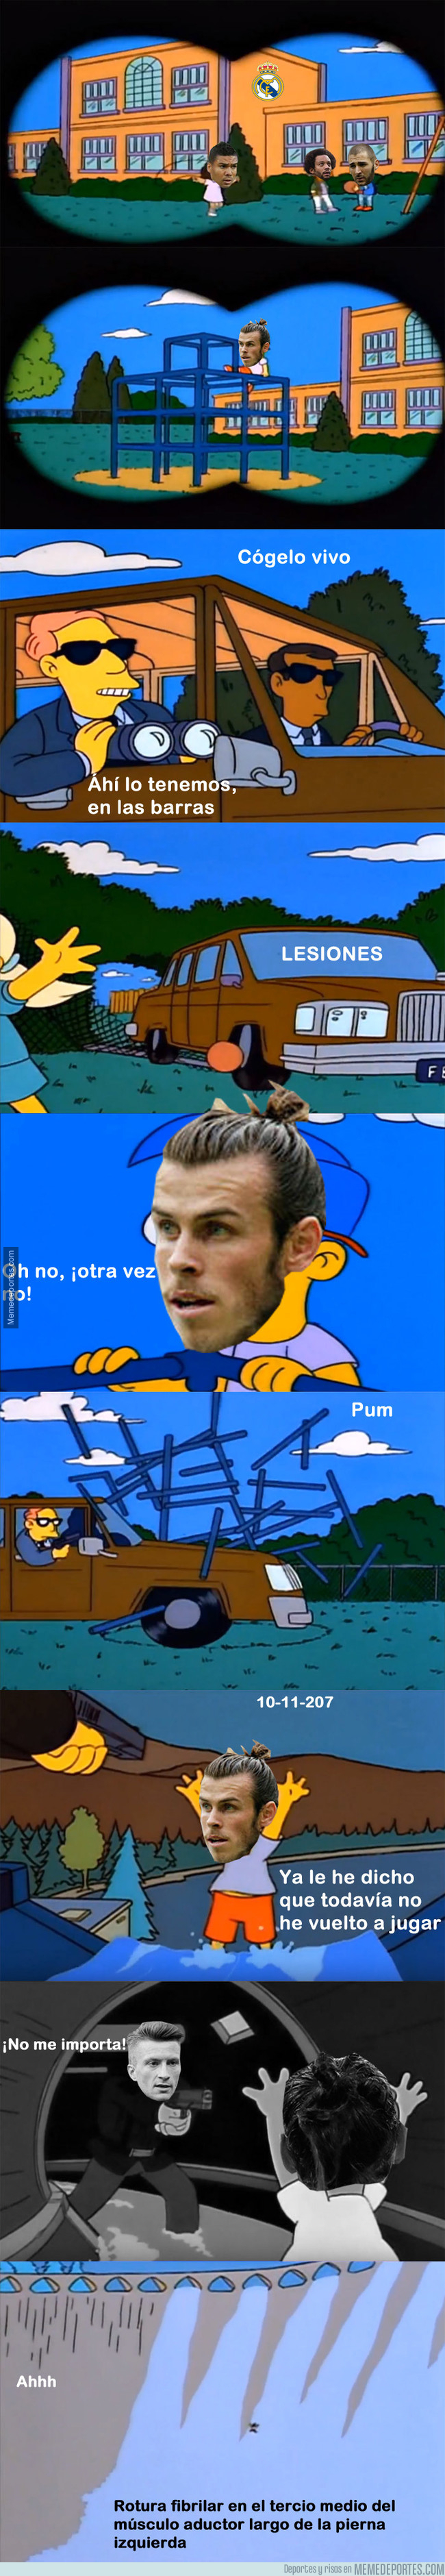 1007258 - Bale perseguido por las lesiones